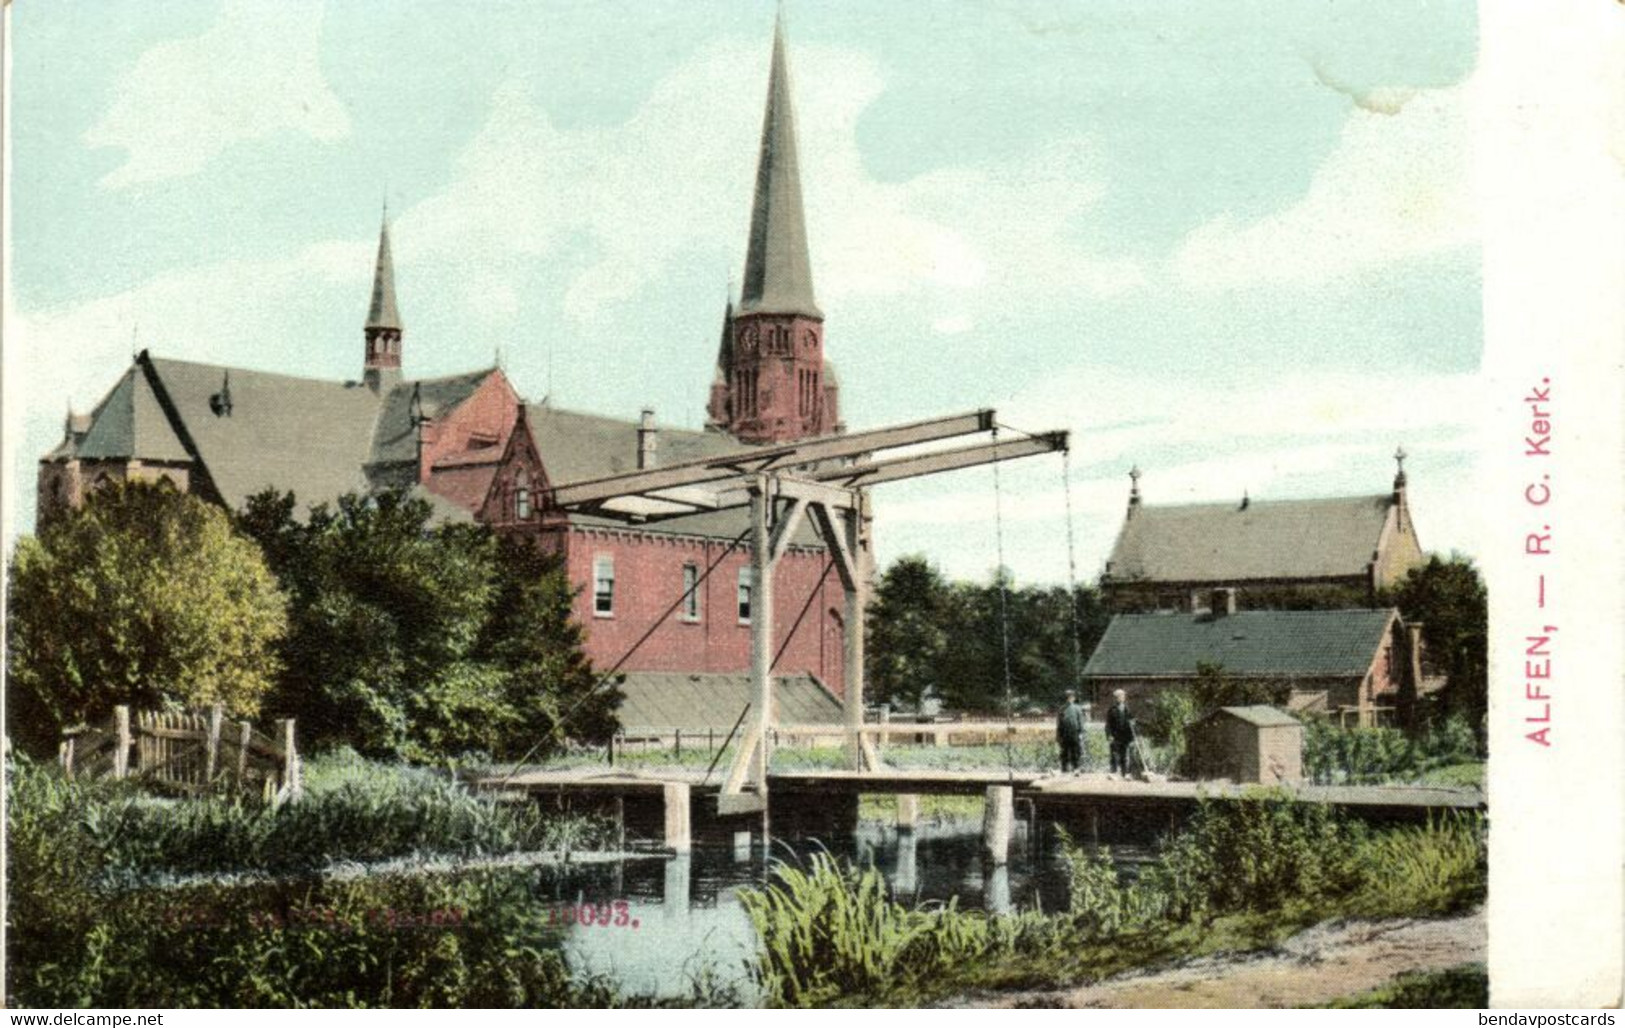 Nederland, ALPHEN A/d RIJN, R.K. Kerk (1900s) Nauta 10093 Ansichtkaart - Alphen A/d Rijn